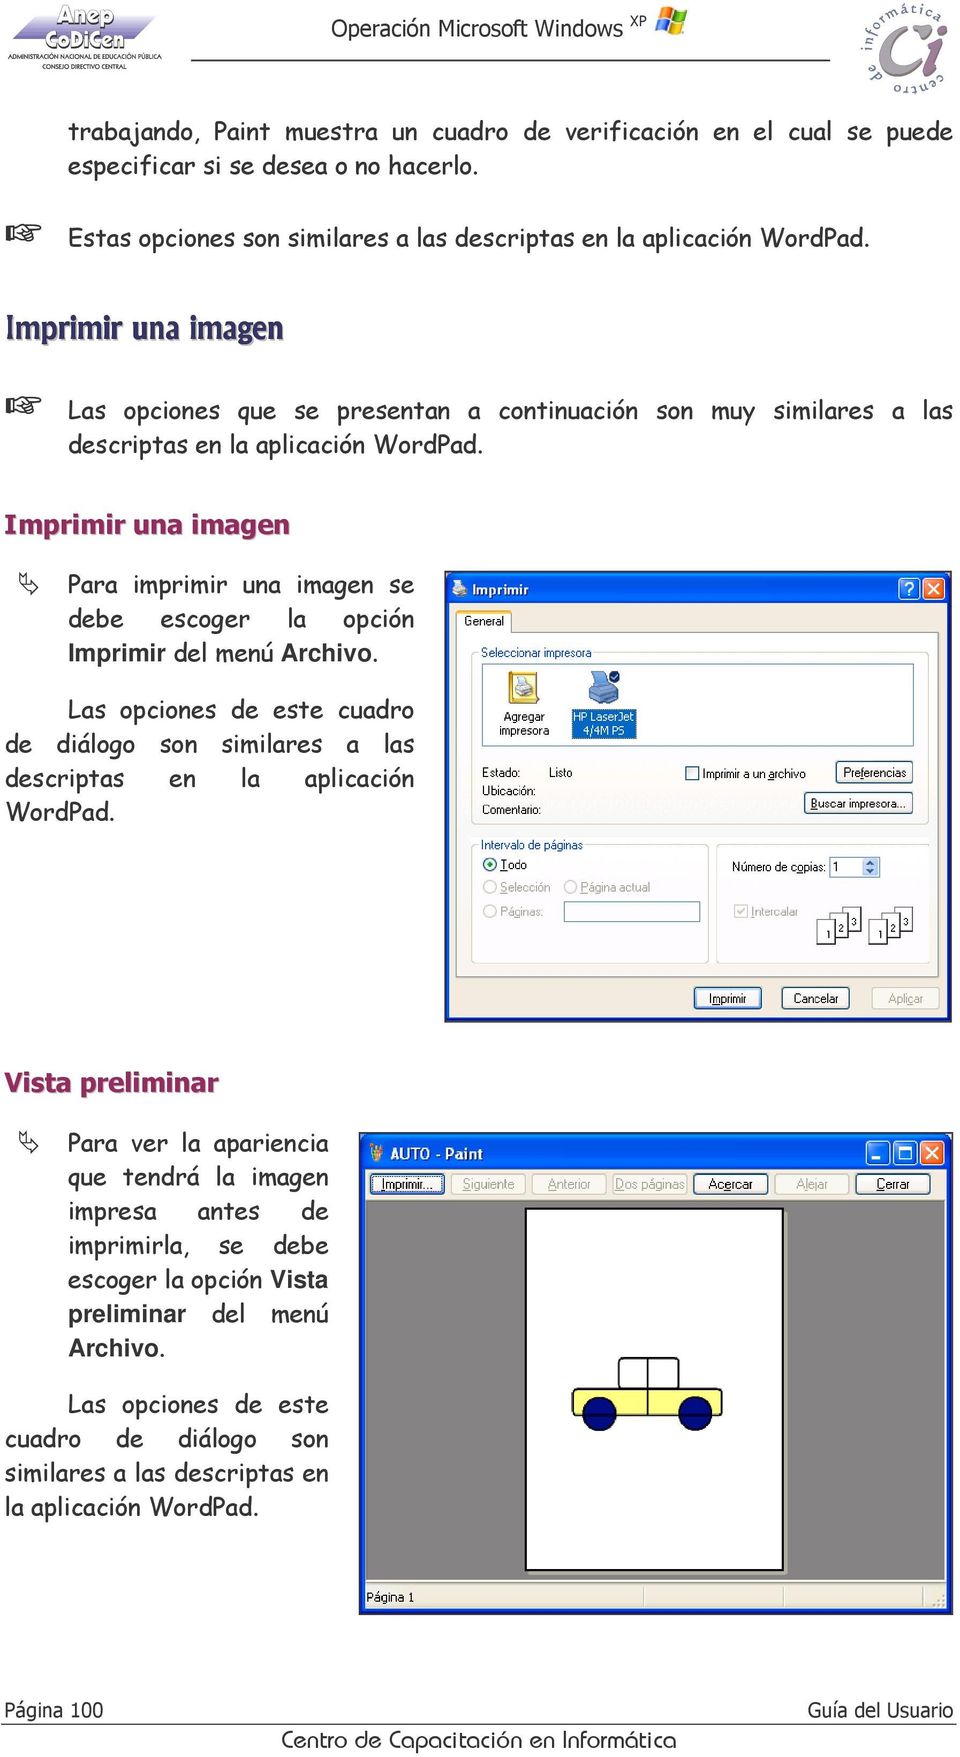 Imprimir una imagen Para imprimir una imagen se debe escoger la opción Imprimir del menú Archivo. Las opciones de este cuadro de diálogo son similares a las descriptas en la aplicación WordPad.